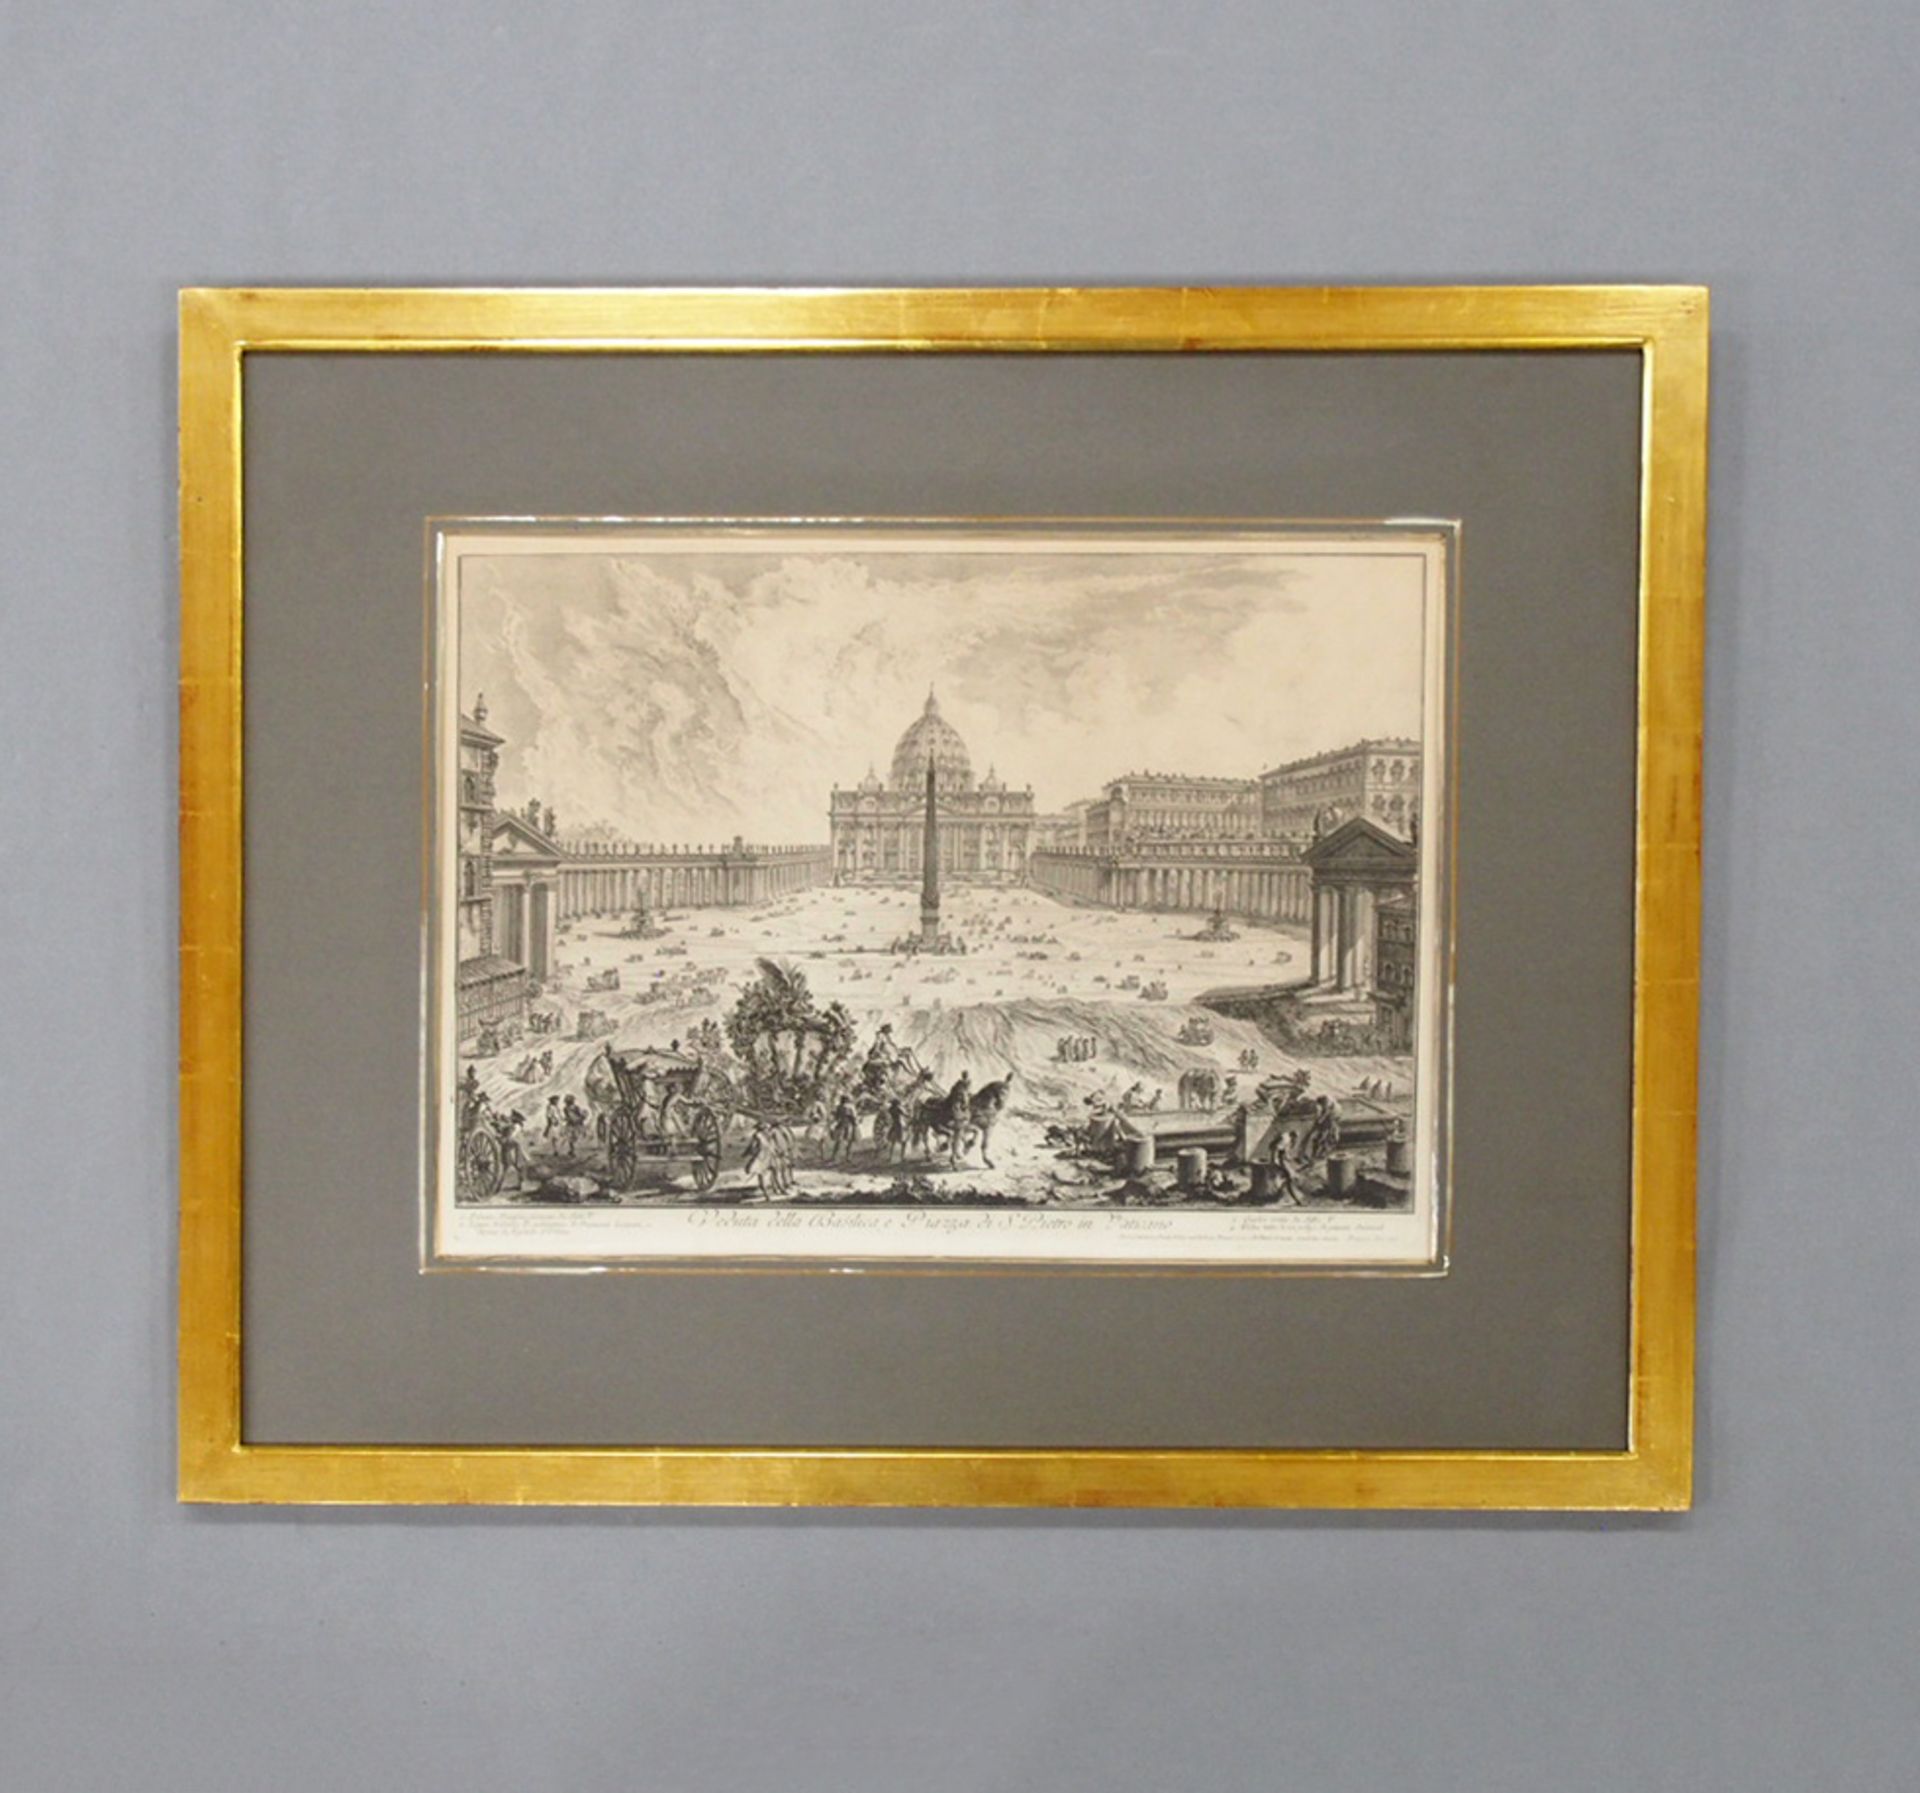 PIRANESI, GiovannI Baptista: Veduta della Basilica e Piazza di S. Pietro in Vaticano